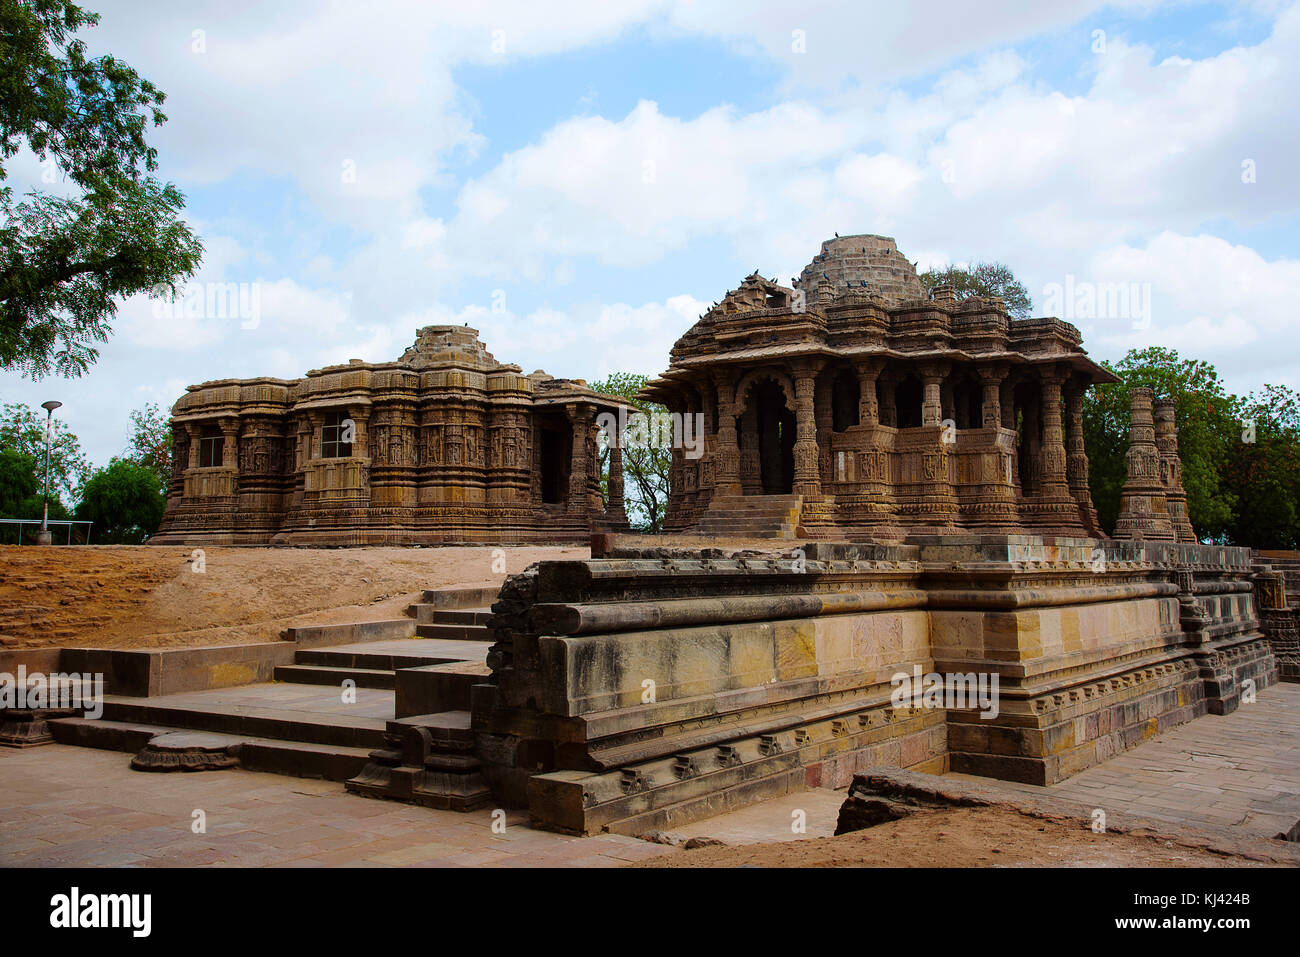 Il Tempio del Sole, tempio indù dedicato alla divinità solare Surya (Sole). Villaggio Modhera del distretto di Mehsana, Gujarat, India Foto Stock